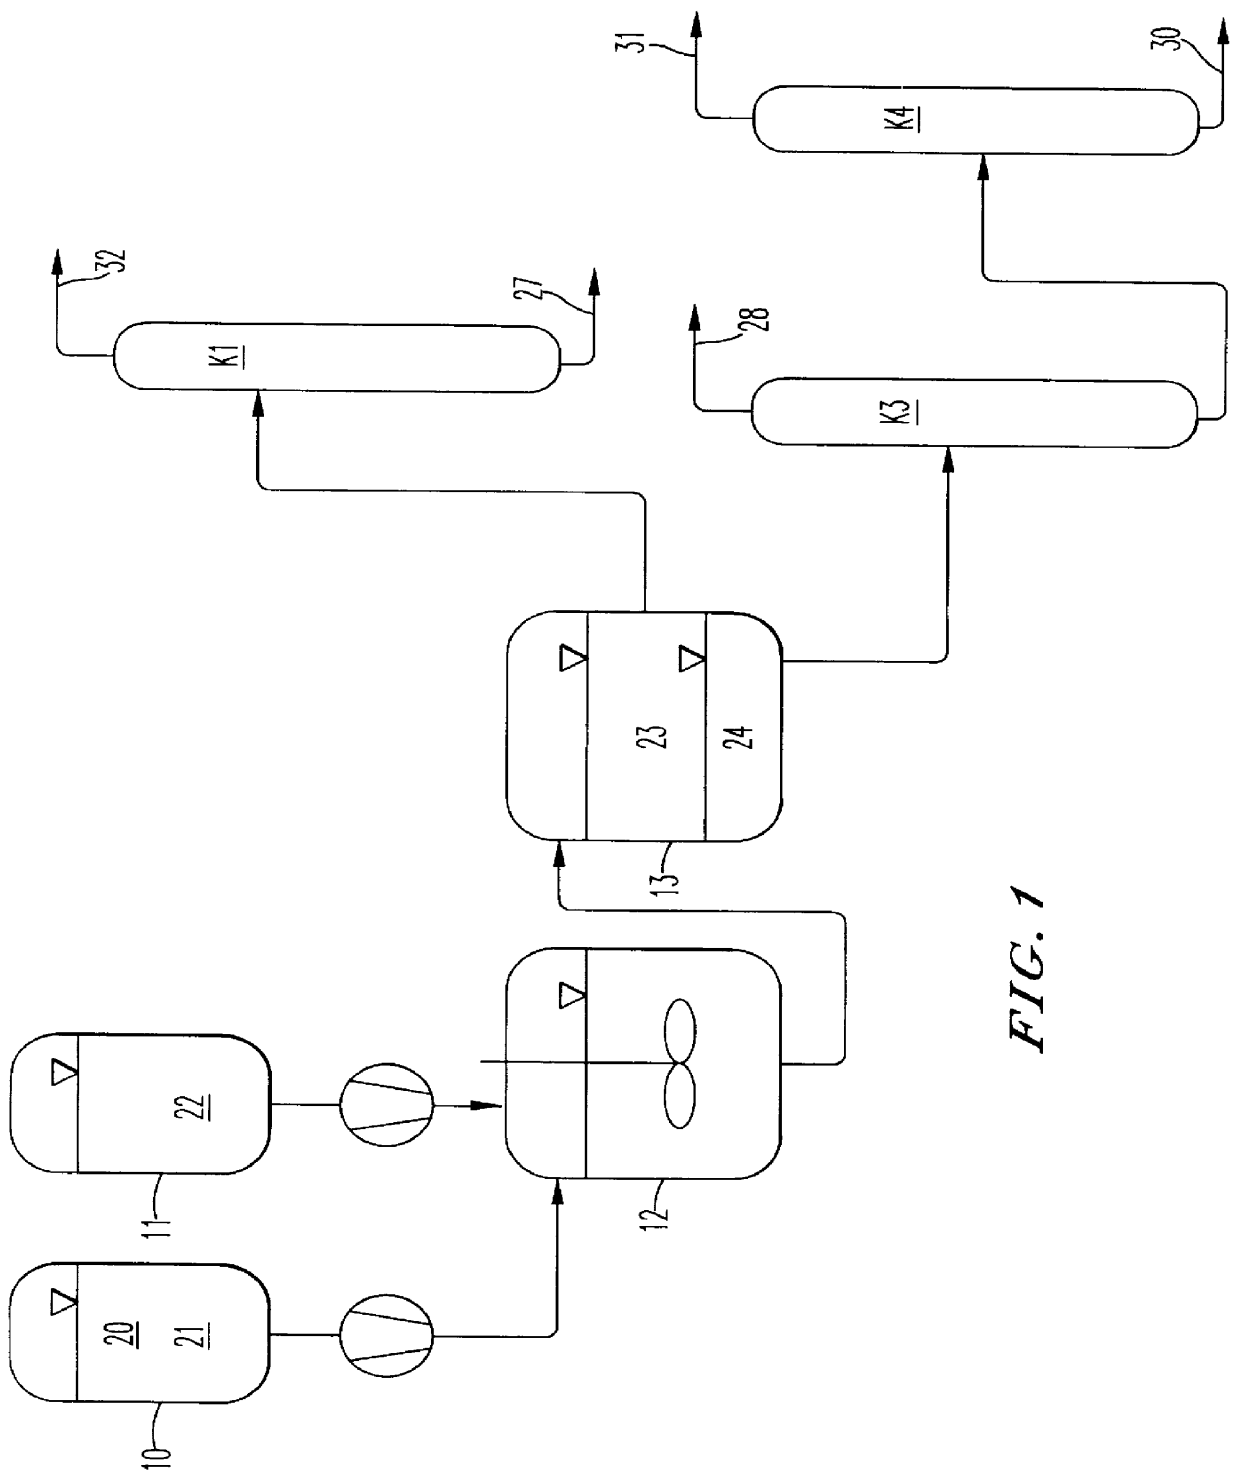 Process for preparing alkoxysilanes